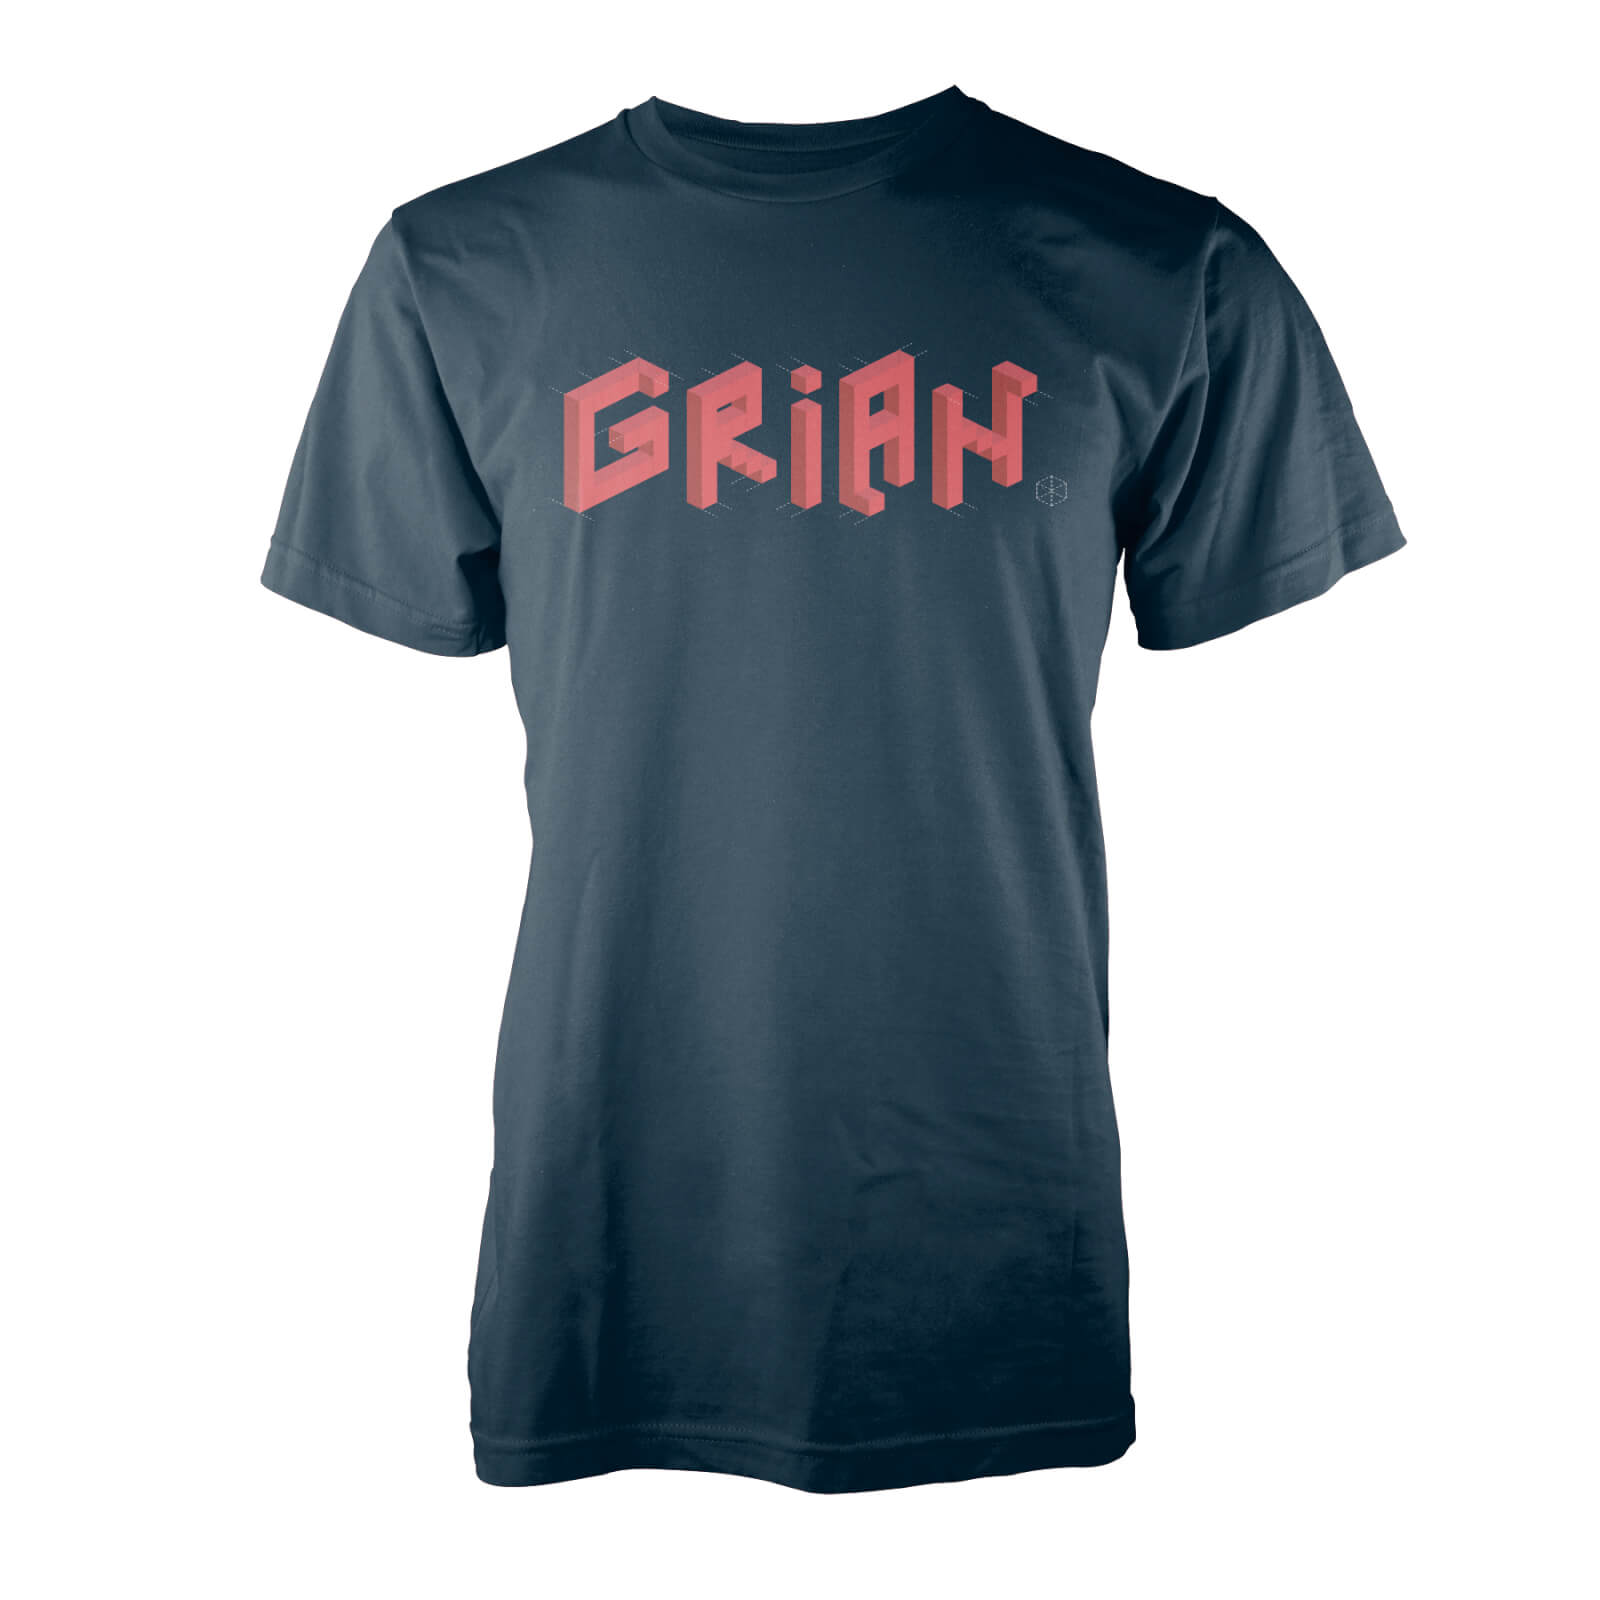 Grian - Built It! T-Shirt - S